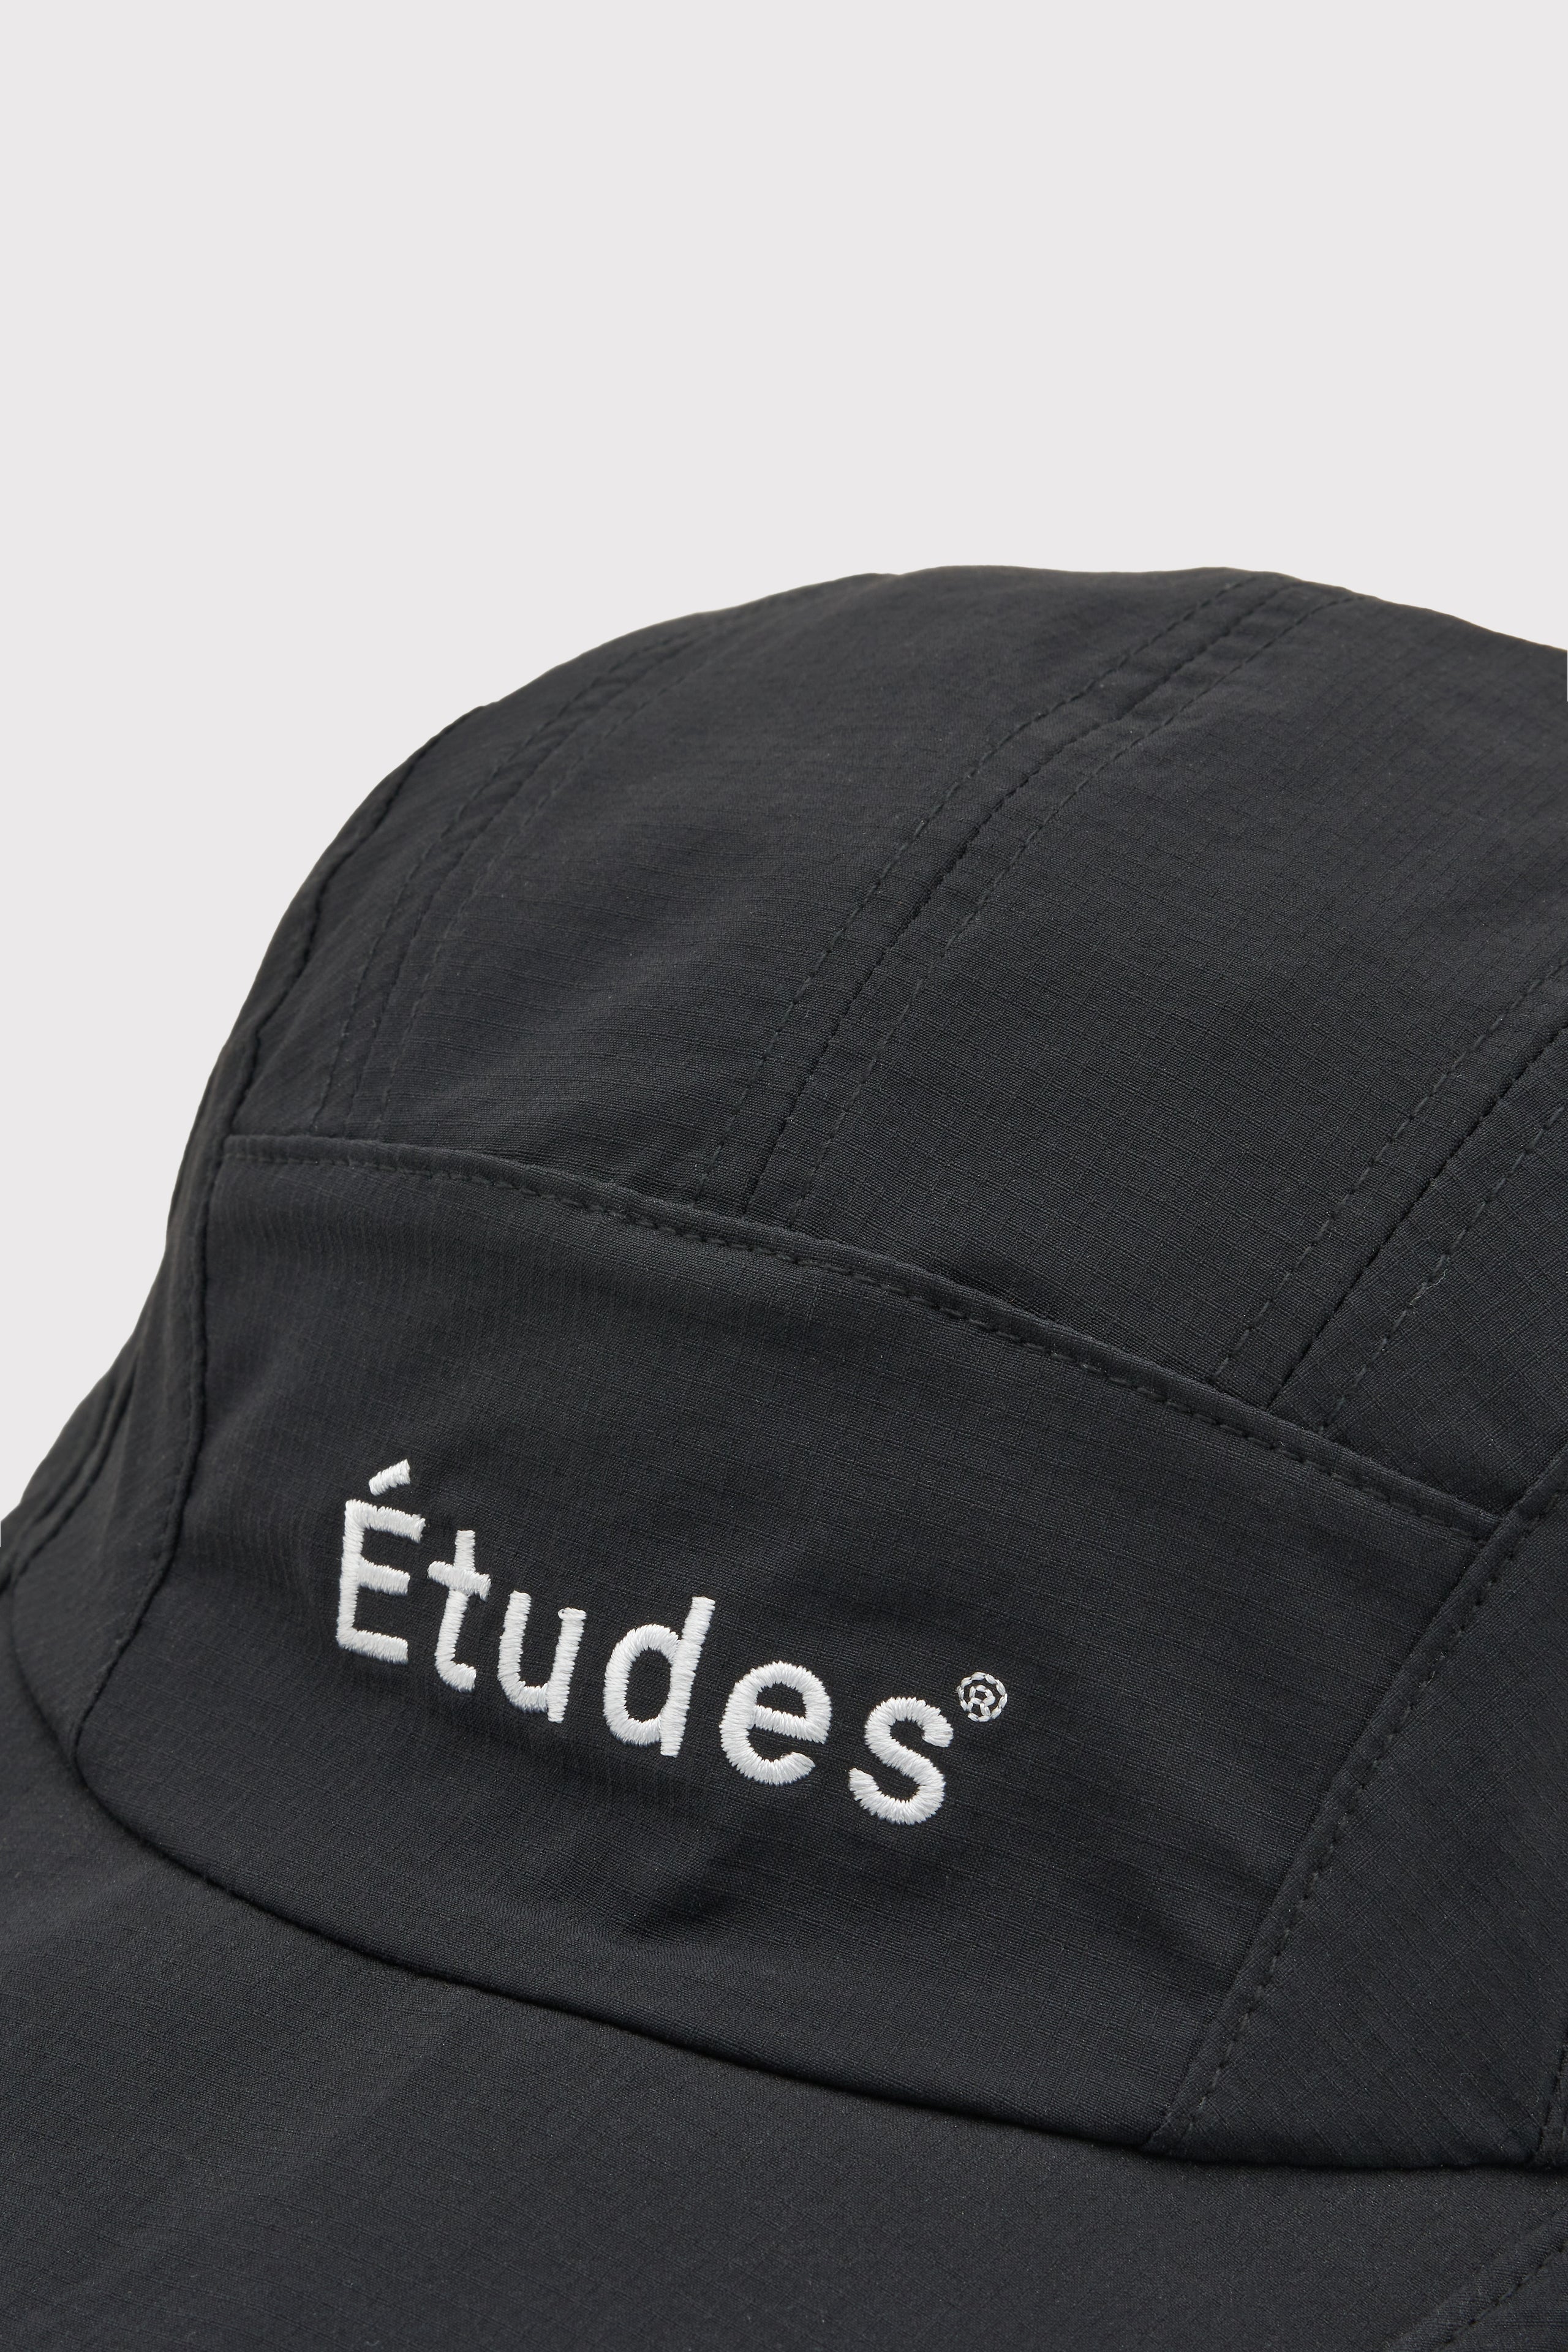 ÉTUDES PERSPECTIVE ETUDES BLACK HAT 3